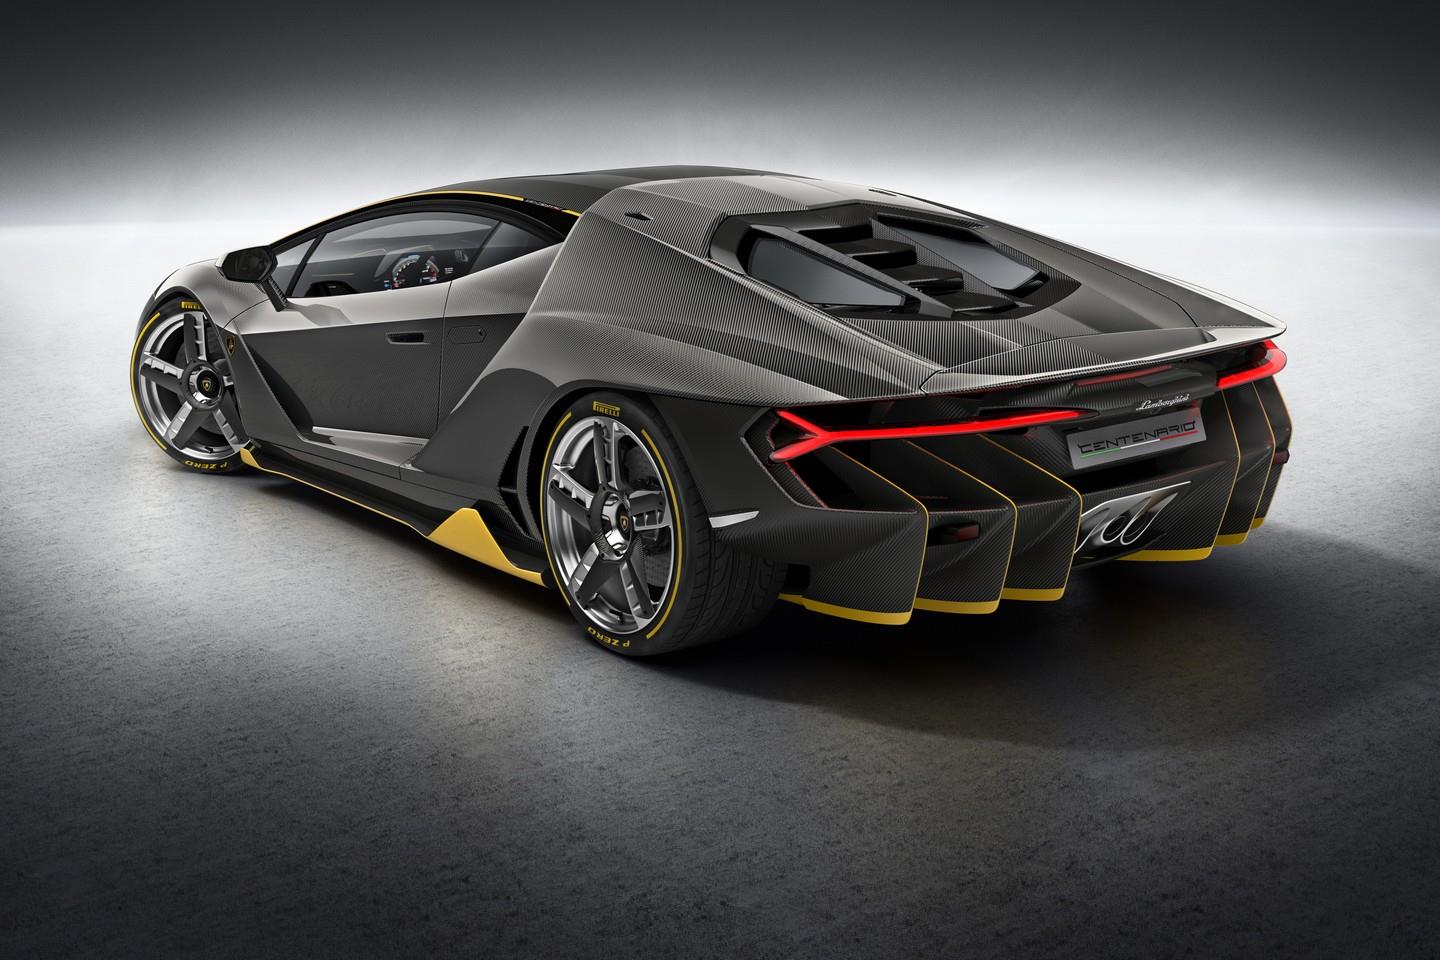 Lamborghini Centenario Price Specs Review Pics And Mileage In India